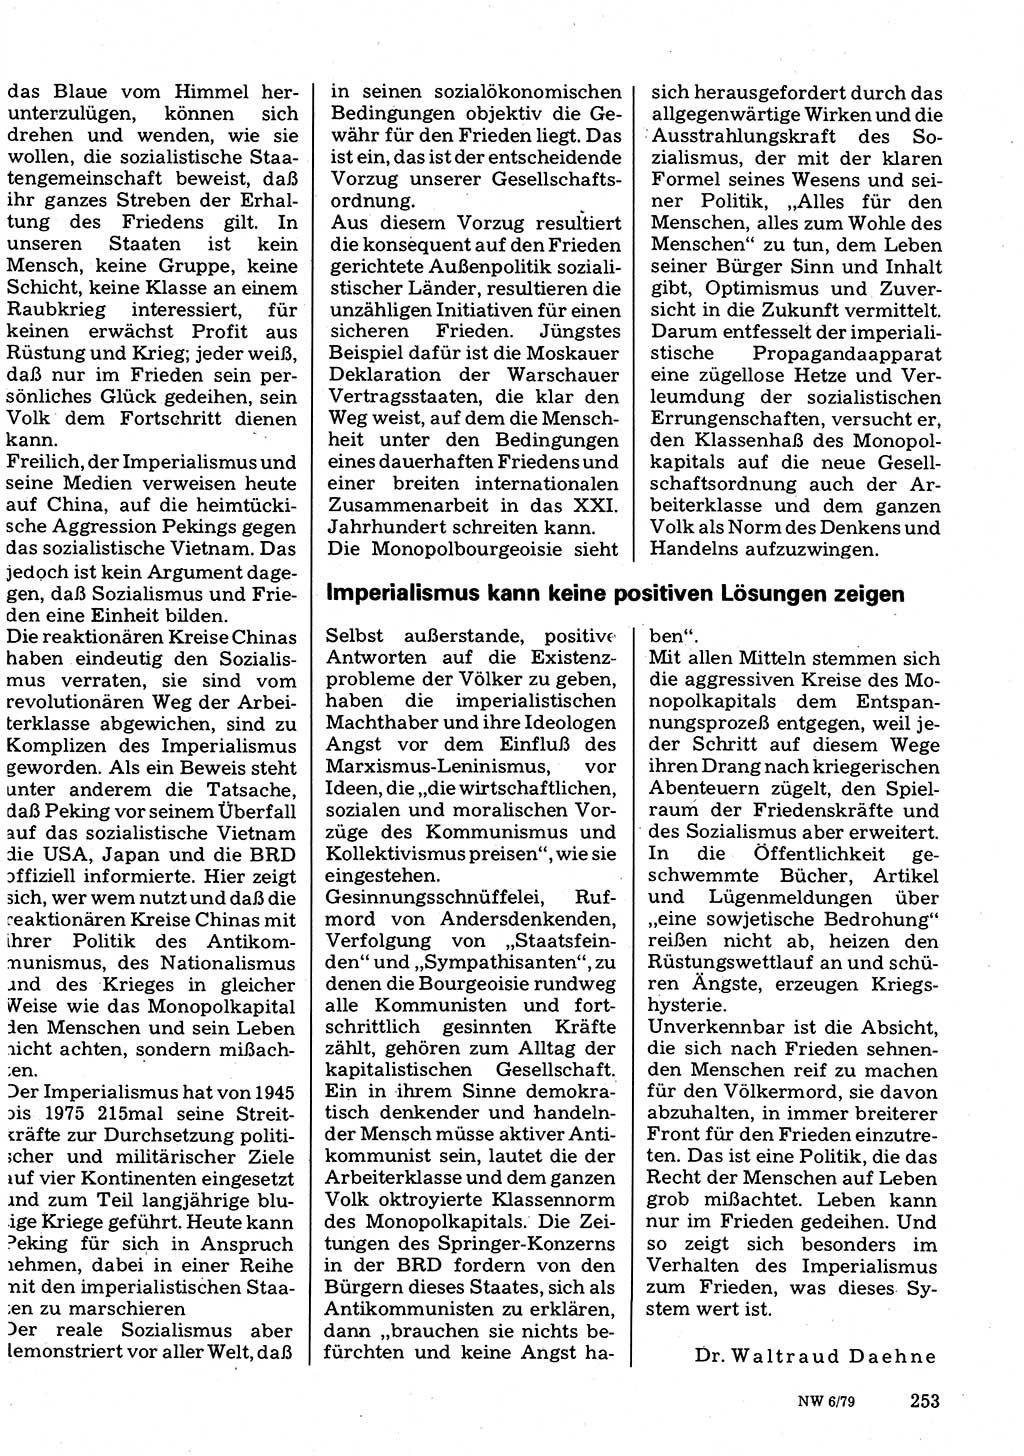 Neuer Weg (NW), Organ des Zentralkomitees (ZK) der SED (Sozialistische Einheitspartei Deutschlands) für Fragen des Parteilebens, 34. Jahrgang [Deutsche Demokratische Republik (DDR)] 1979, Seite 253 (NW ZK SED DDR 1979, S. 253)